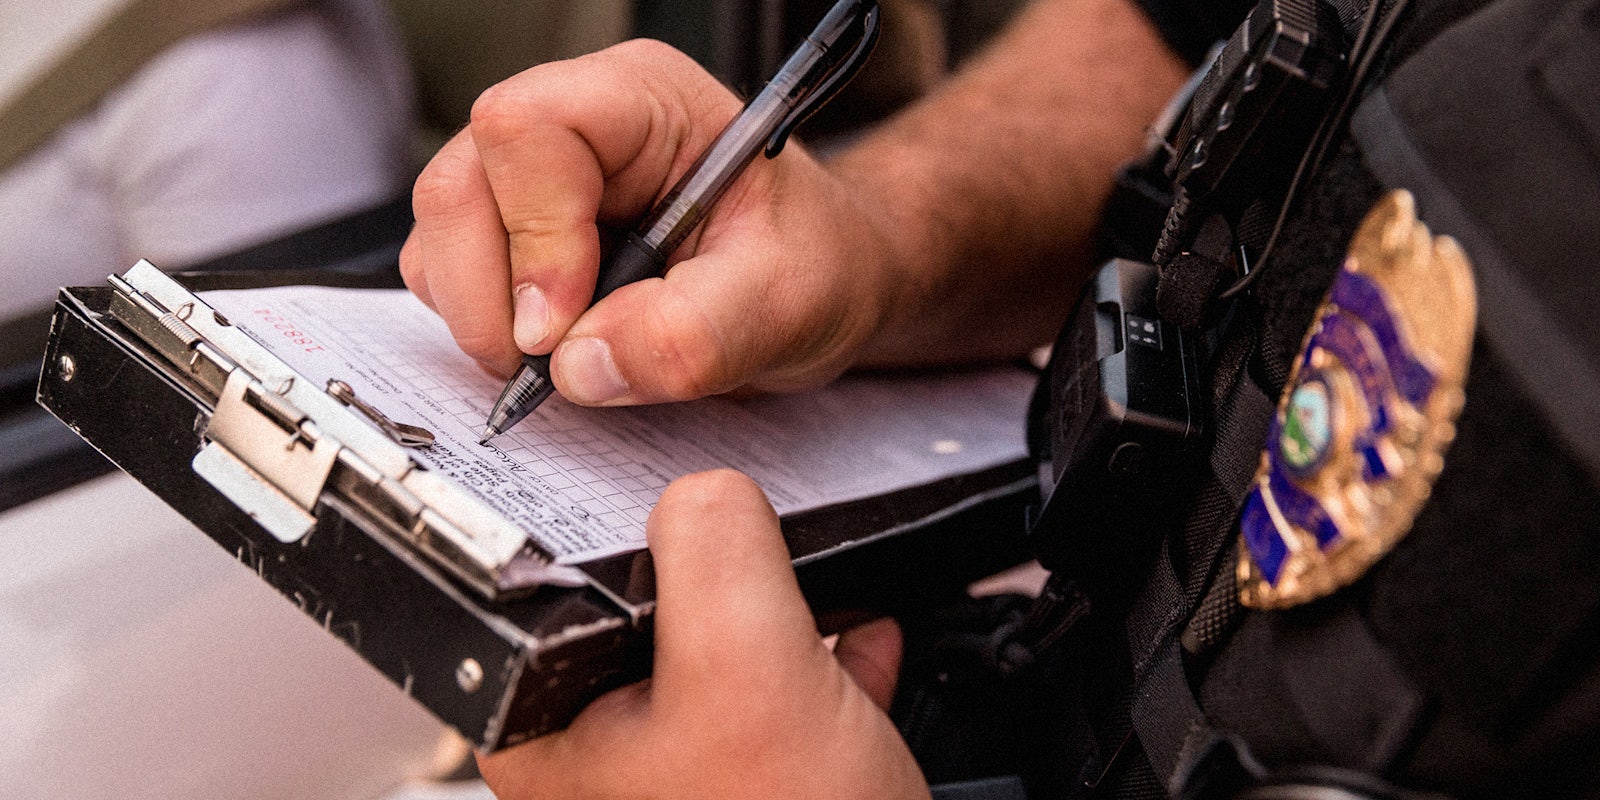 An officer's hands writing a ticket.